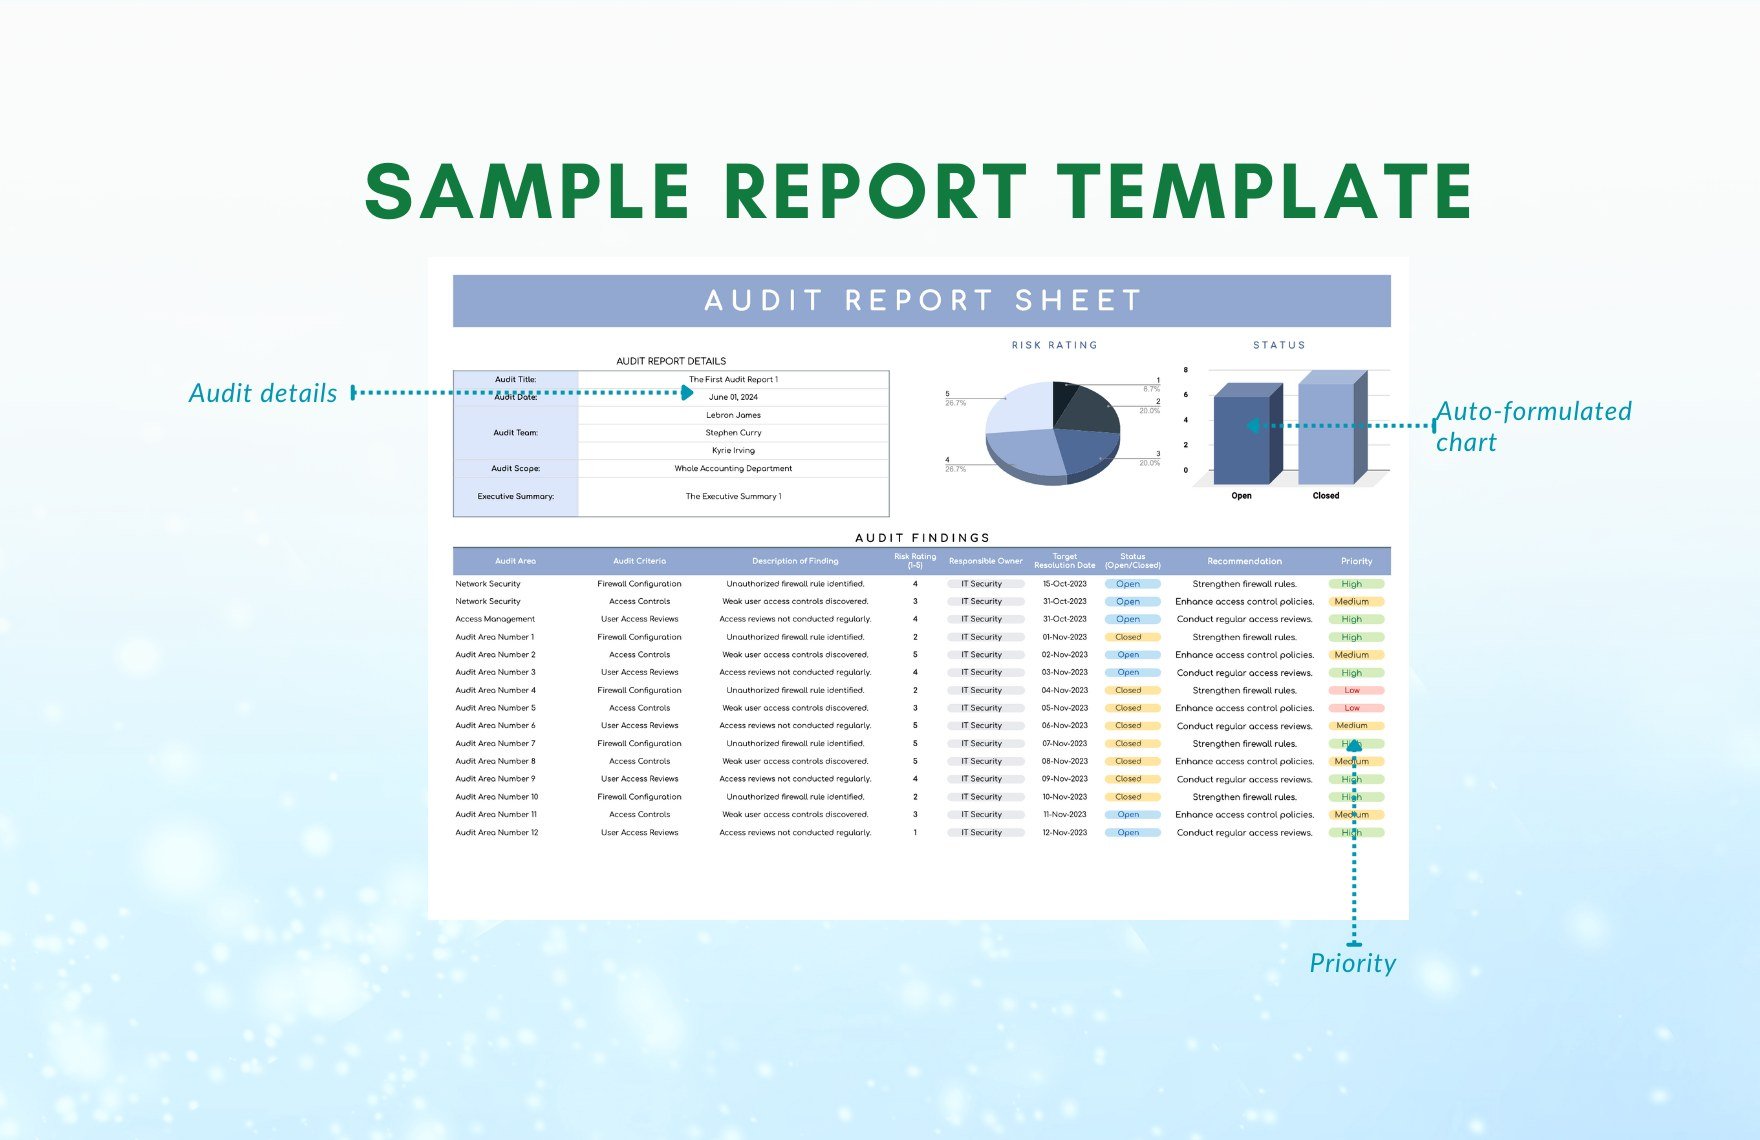 Sample Report Template